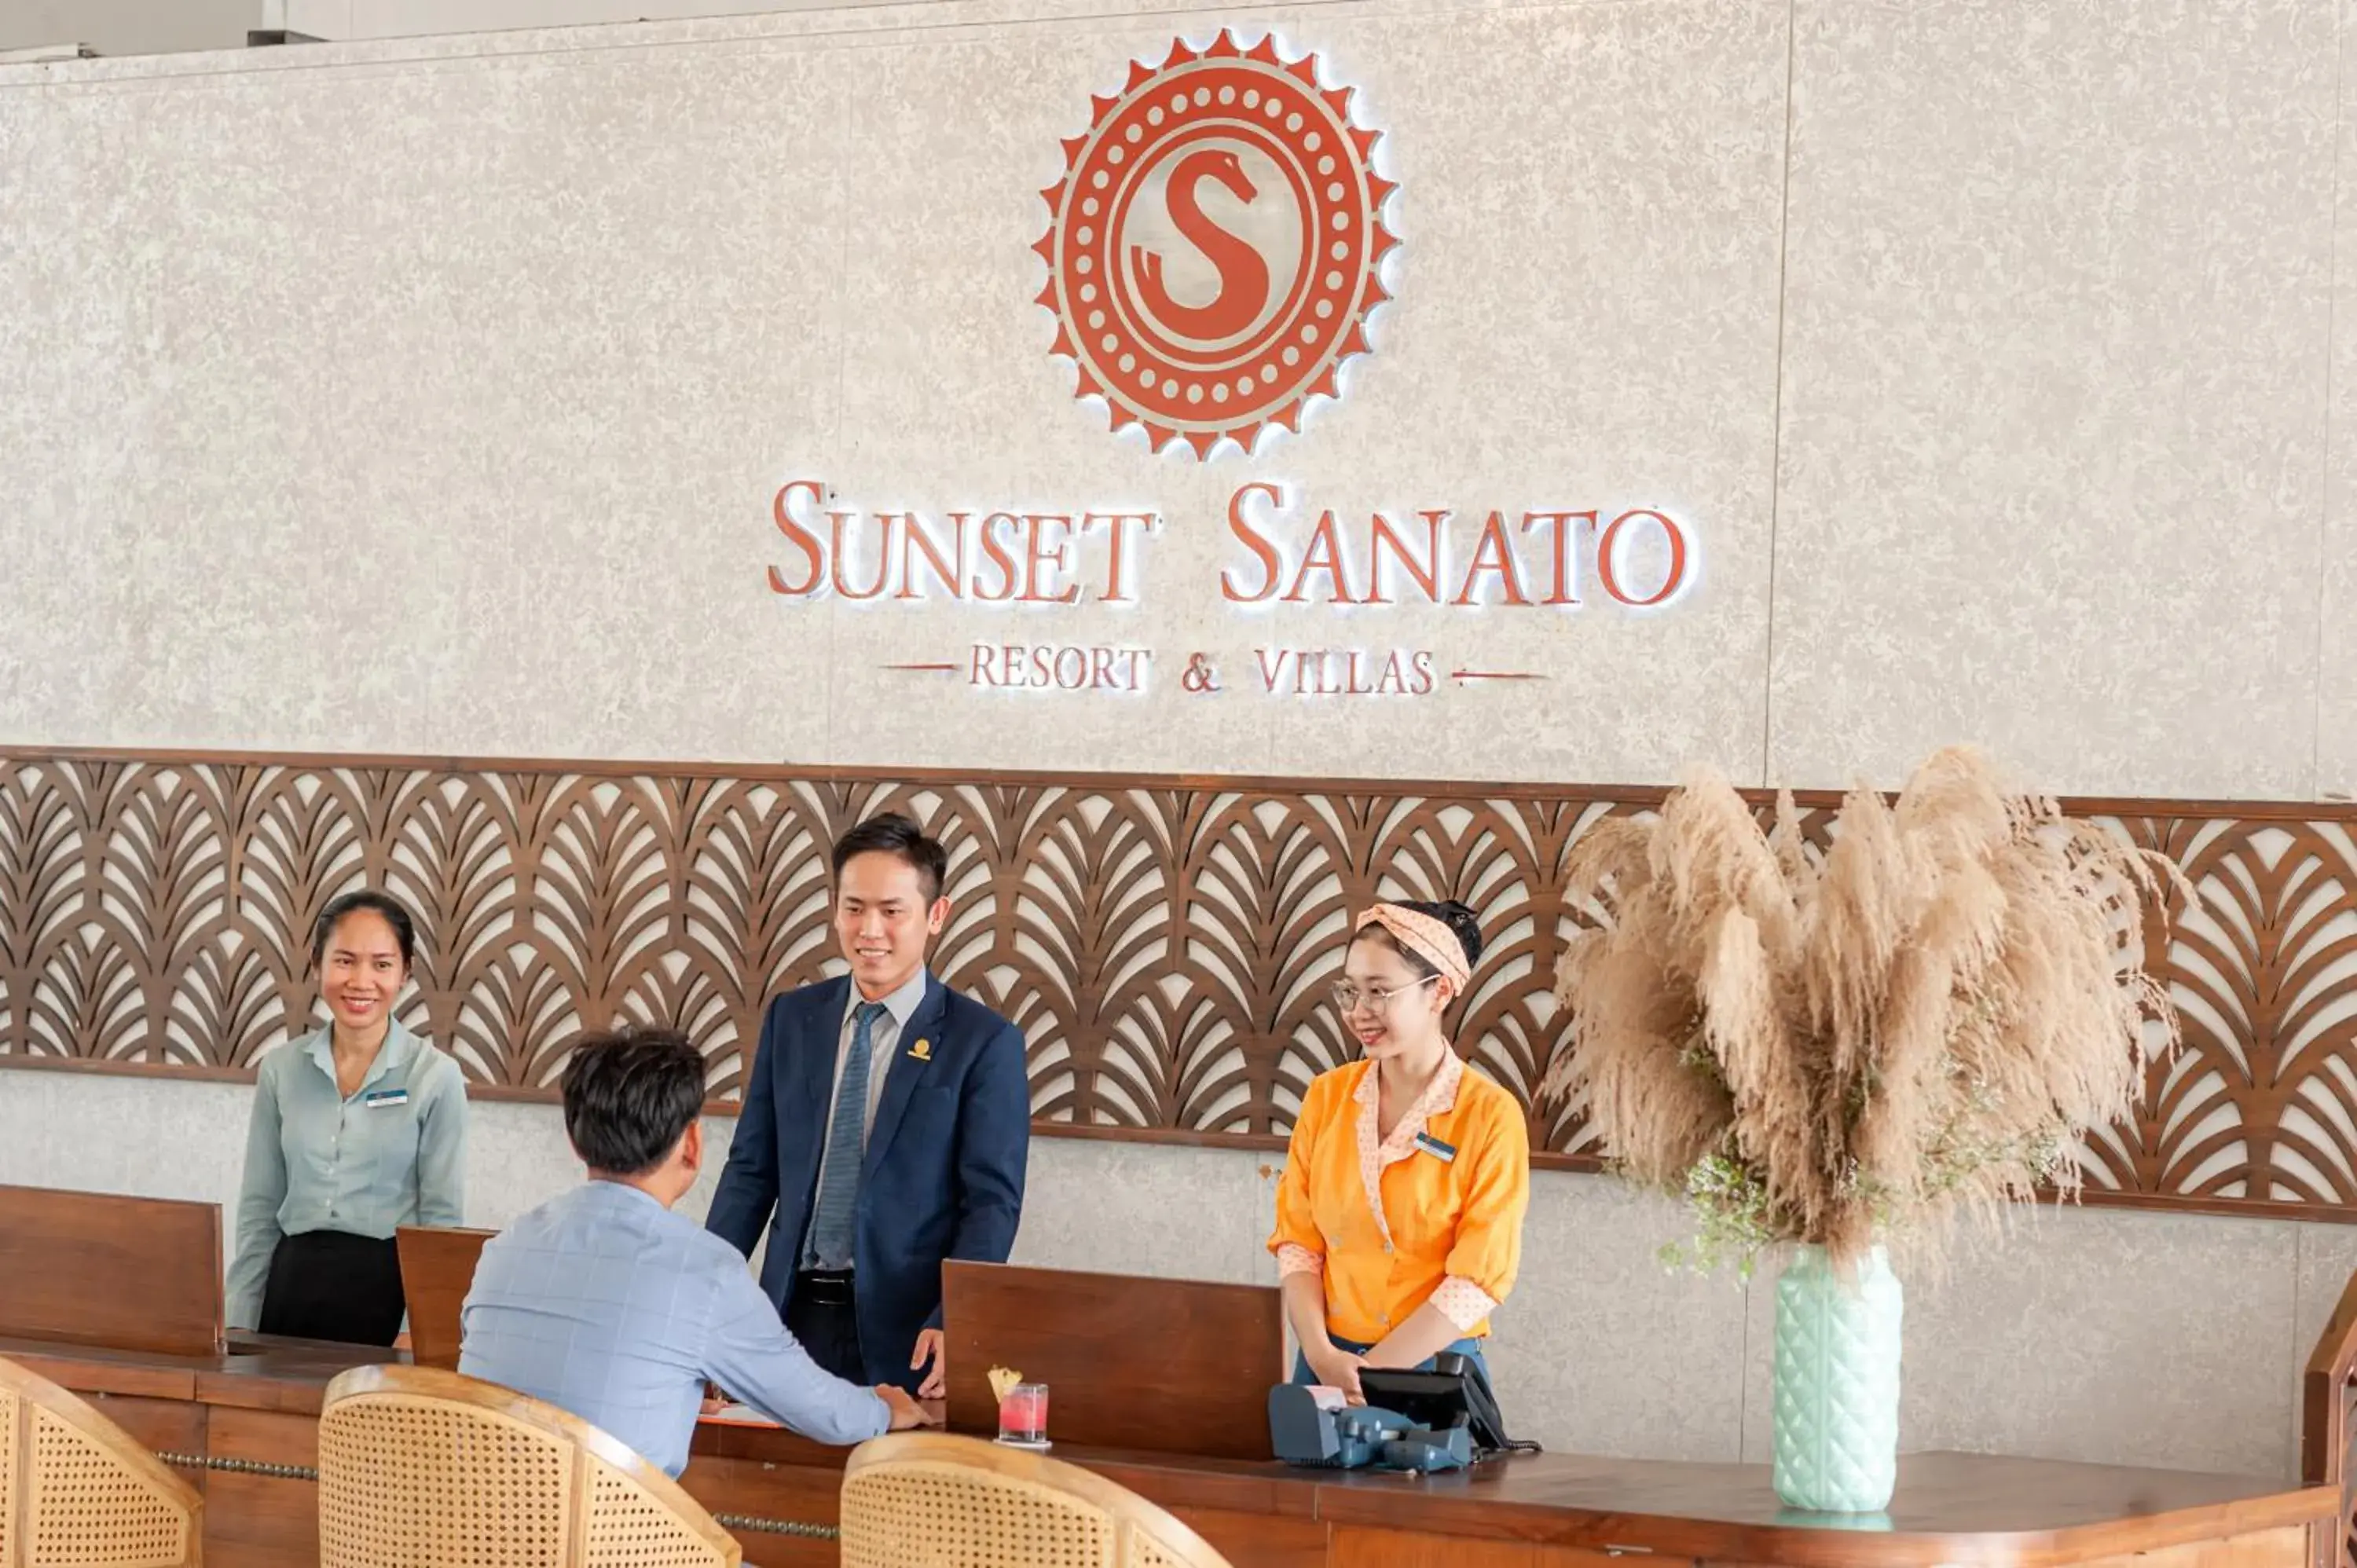 Lobby or reception in Sunset Sanato Resort & Villas